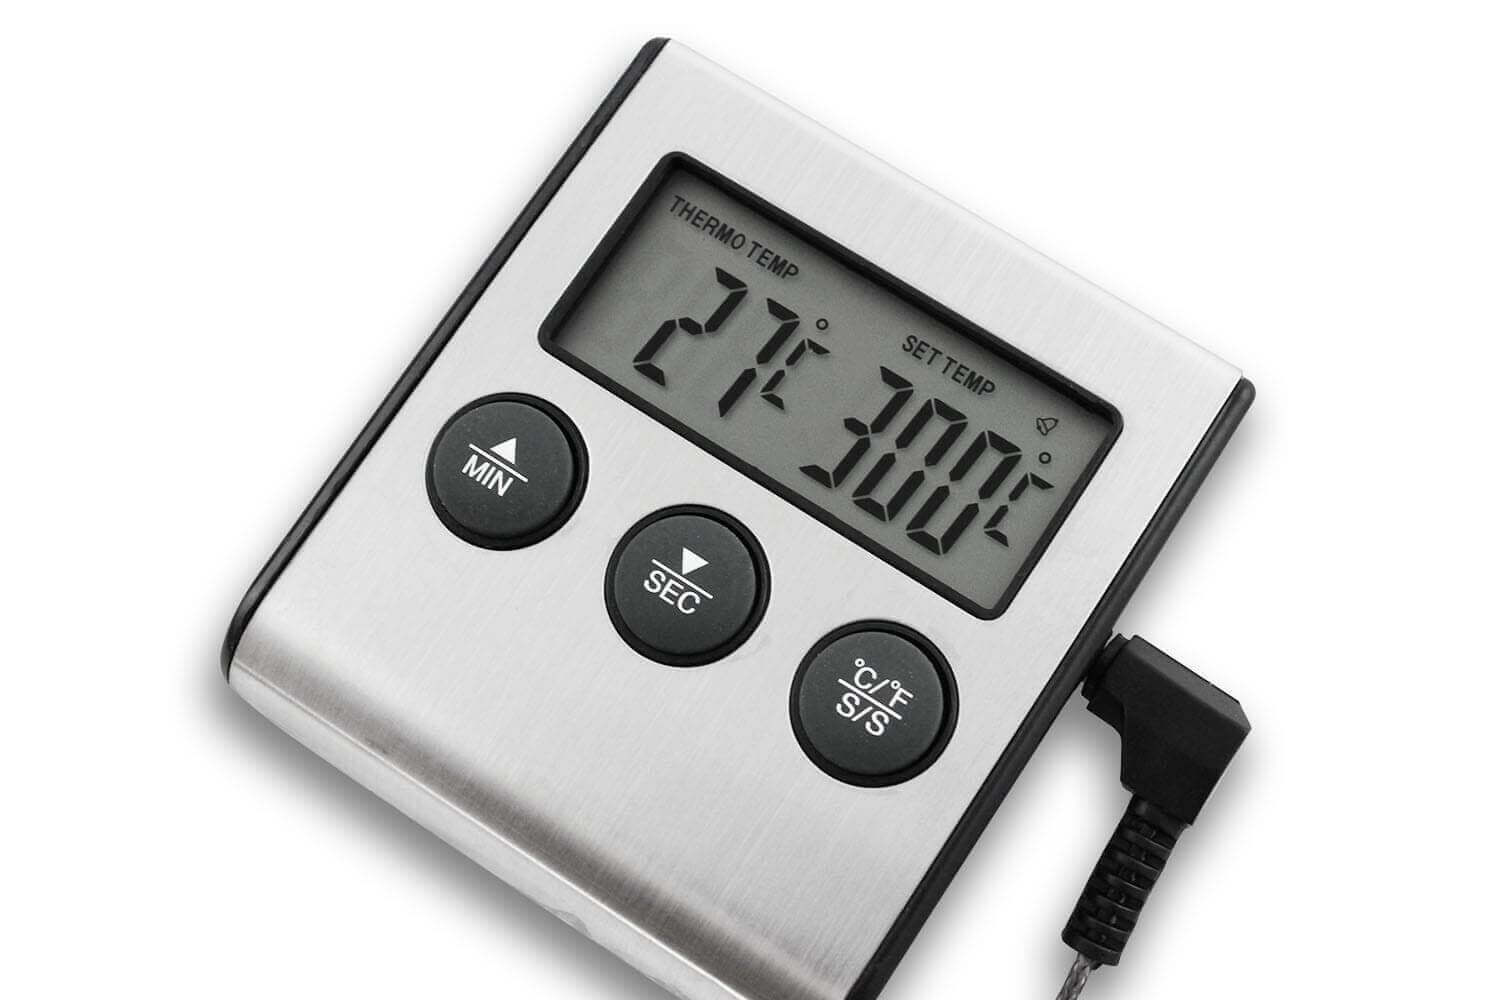 Thermomètre Alimentaire de Cuisine Digital à Sonde - Noir - Prix